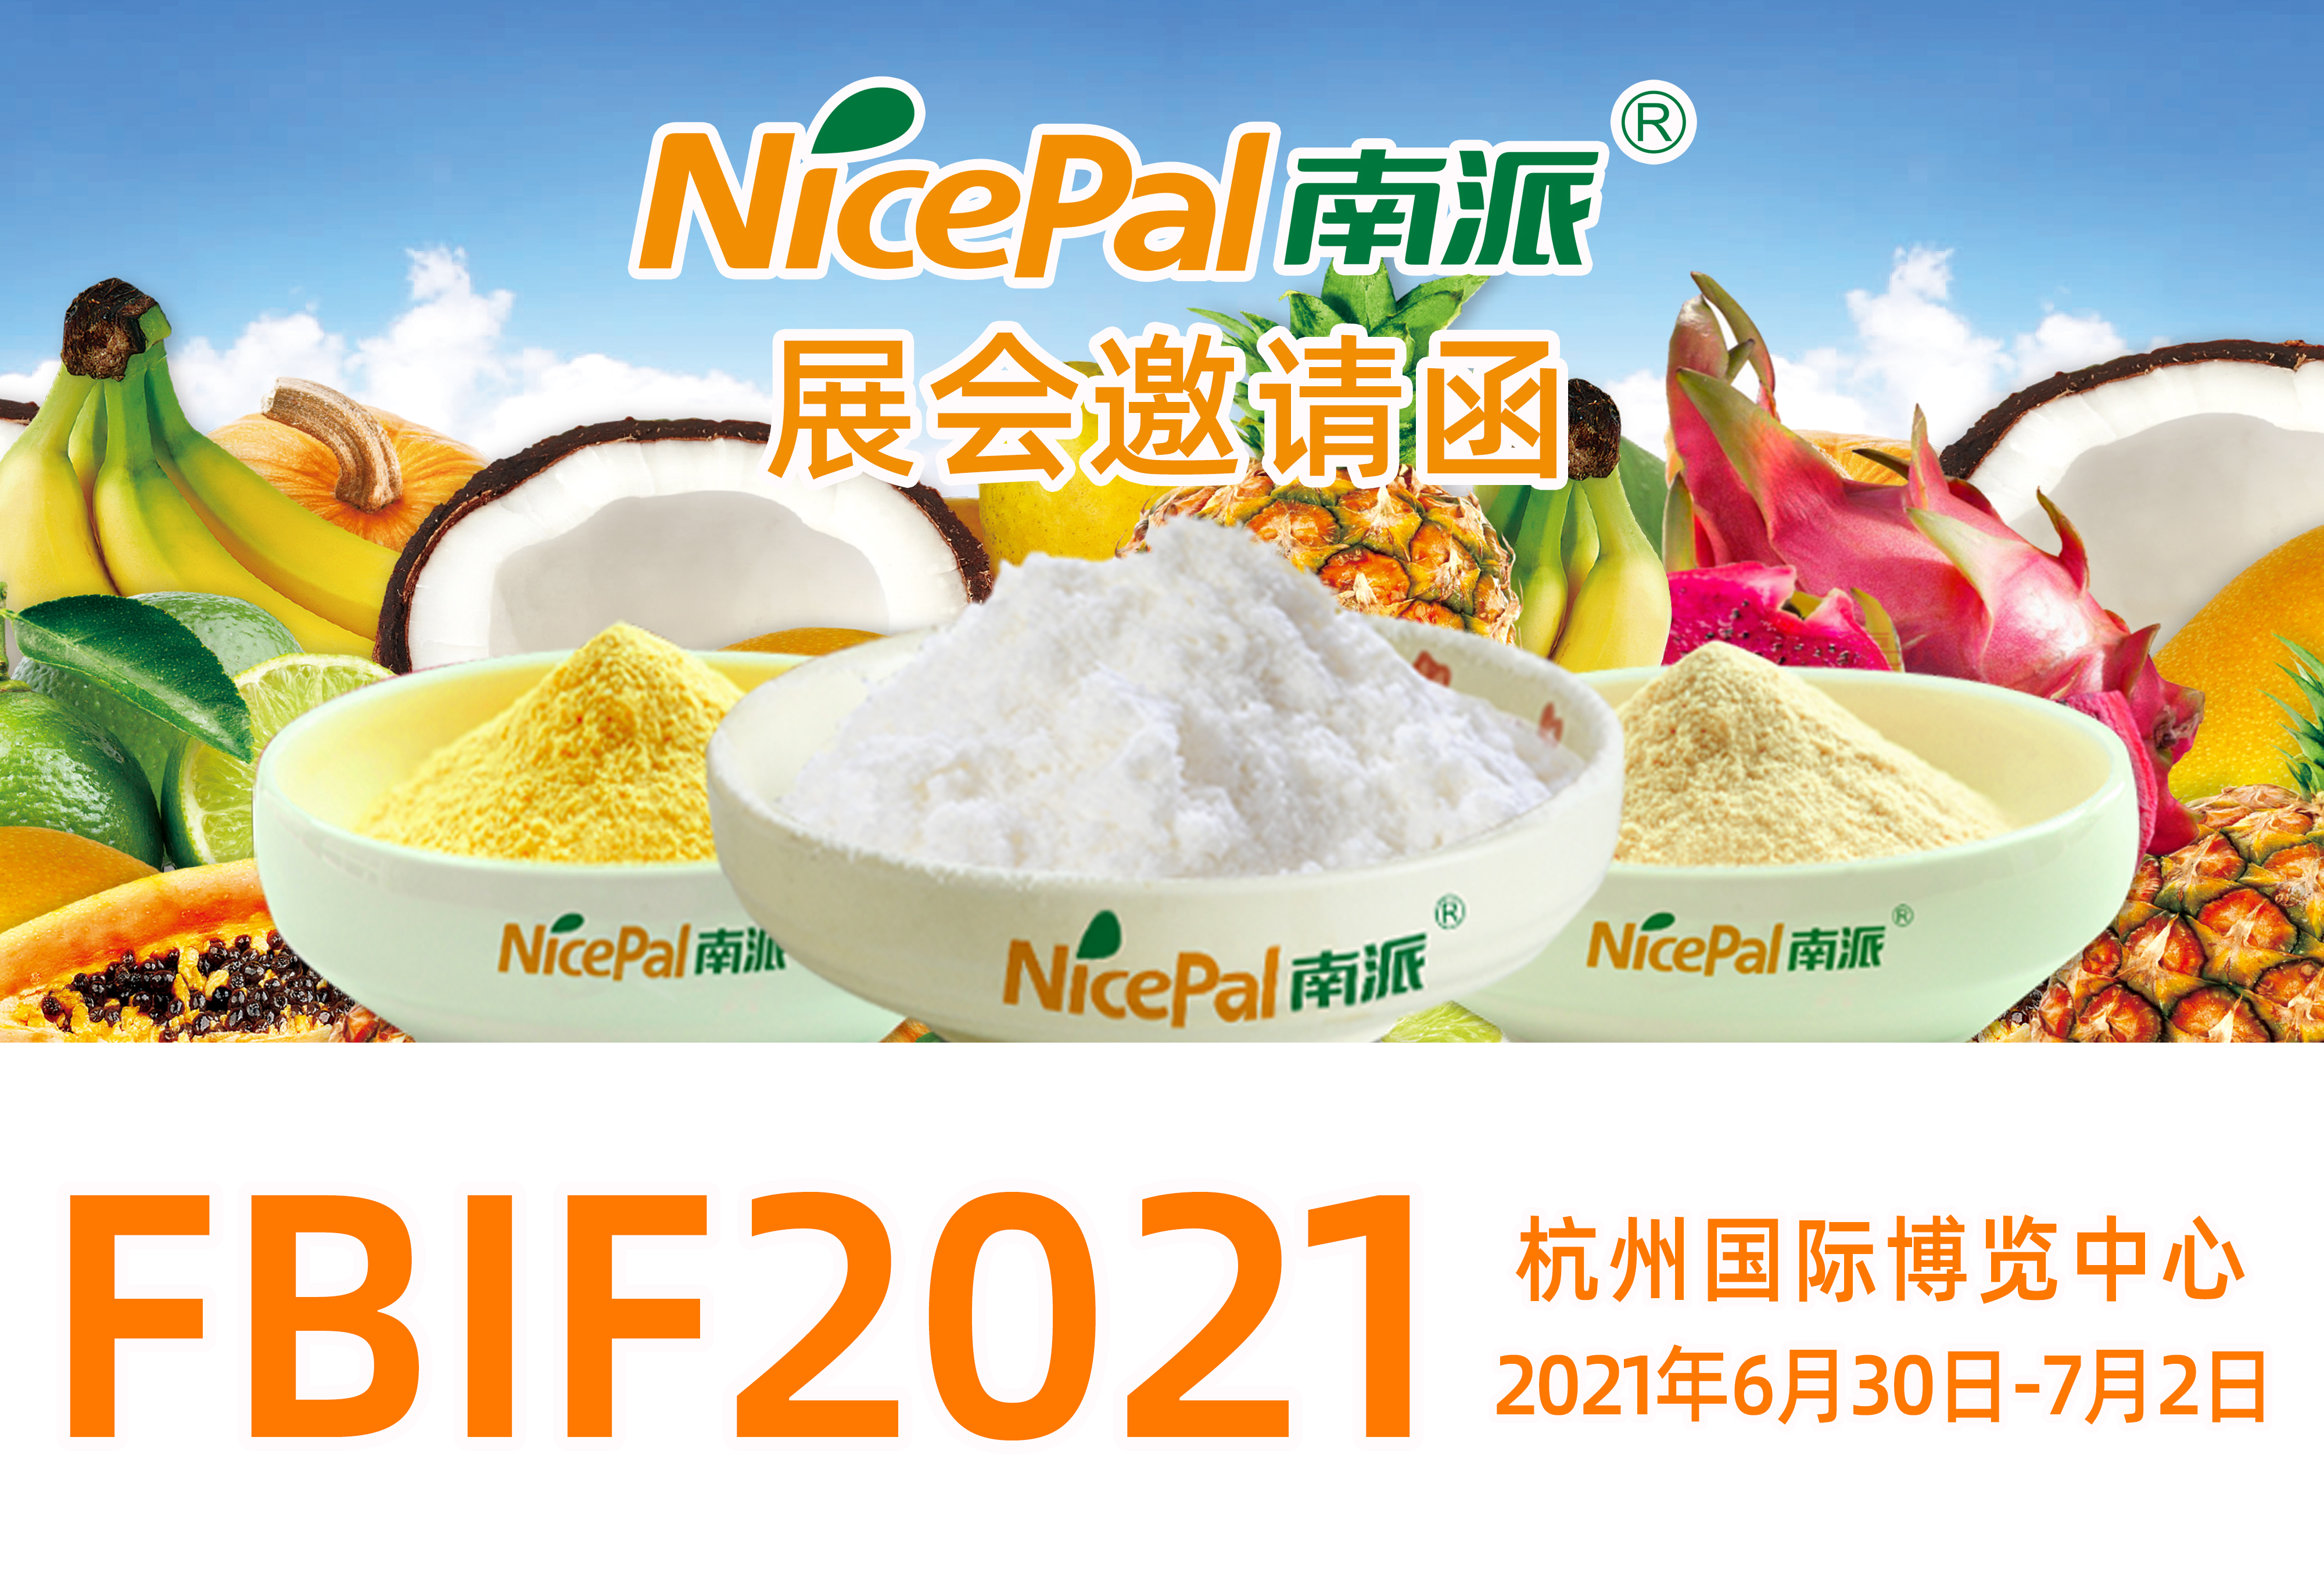 海南南派诚邀您参加杭州FBIF食品饮料创新论坛，期待您的莅临！